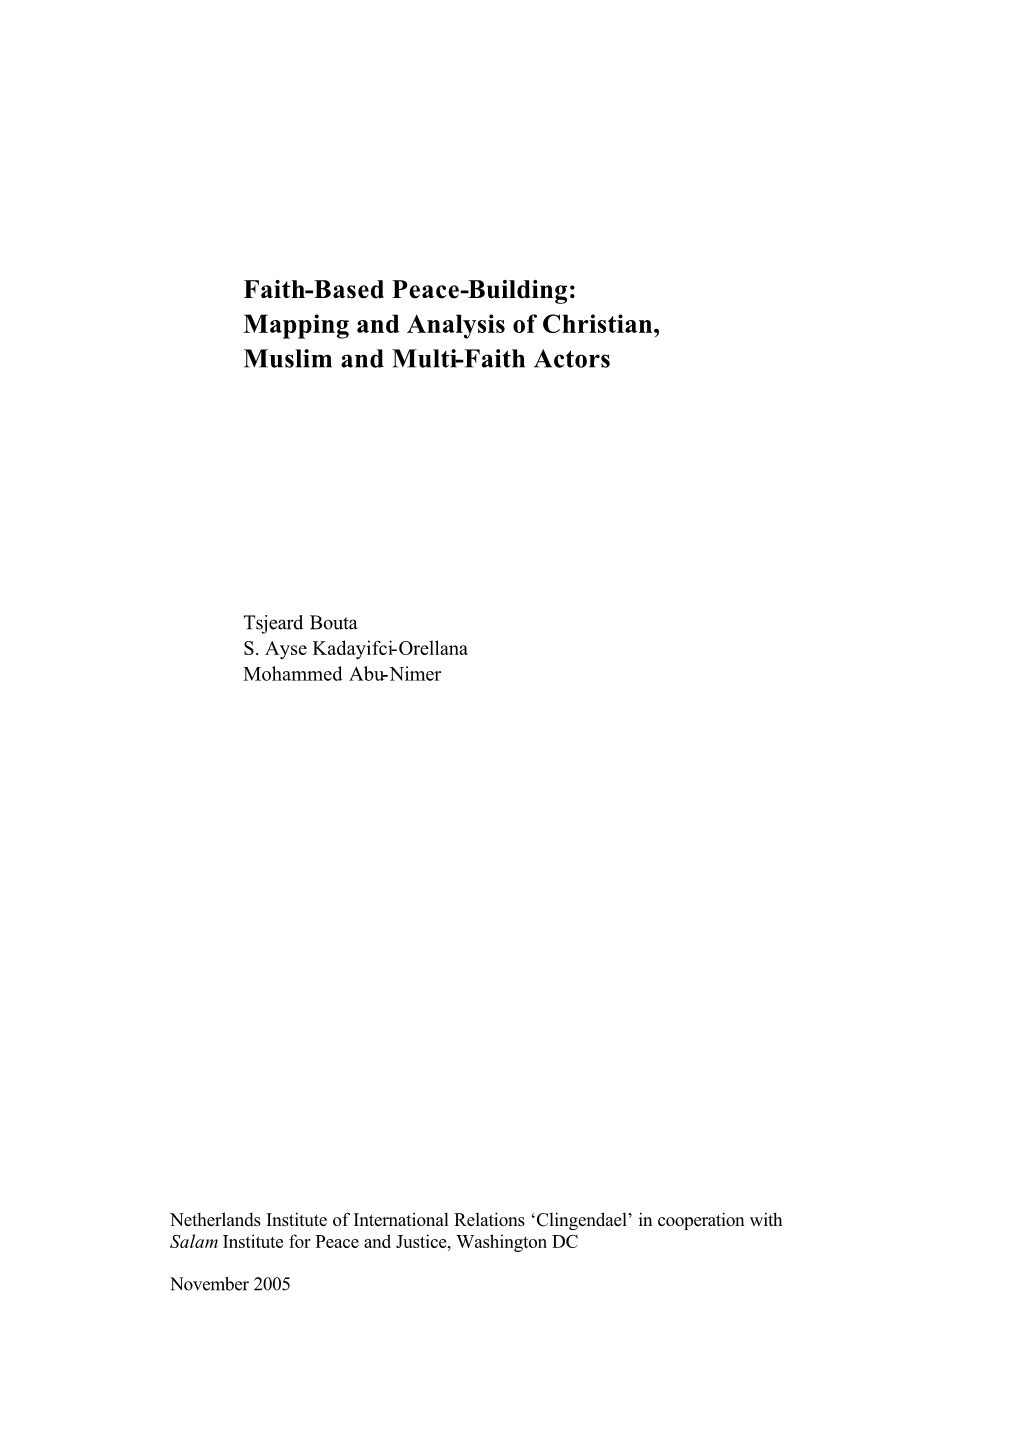 Faith-Based Peace Building